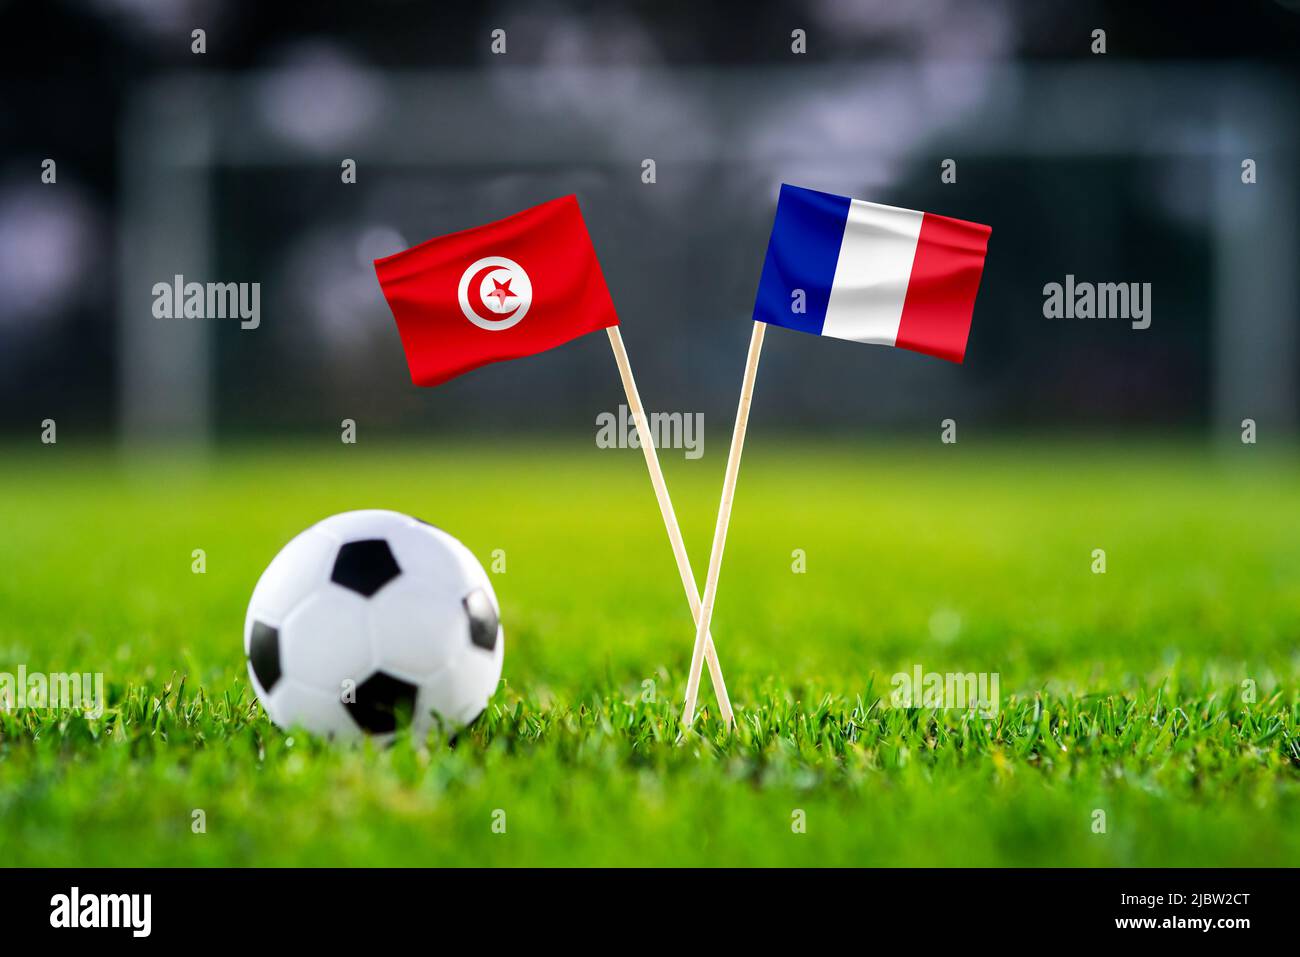 Tunisie contre France, ville de l'éducation, papier peint du match de football, drapeaux nationaux faits main et ballon de football sur gazon vert. Stade de football en arrière-plan. Banque D'Images